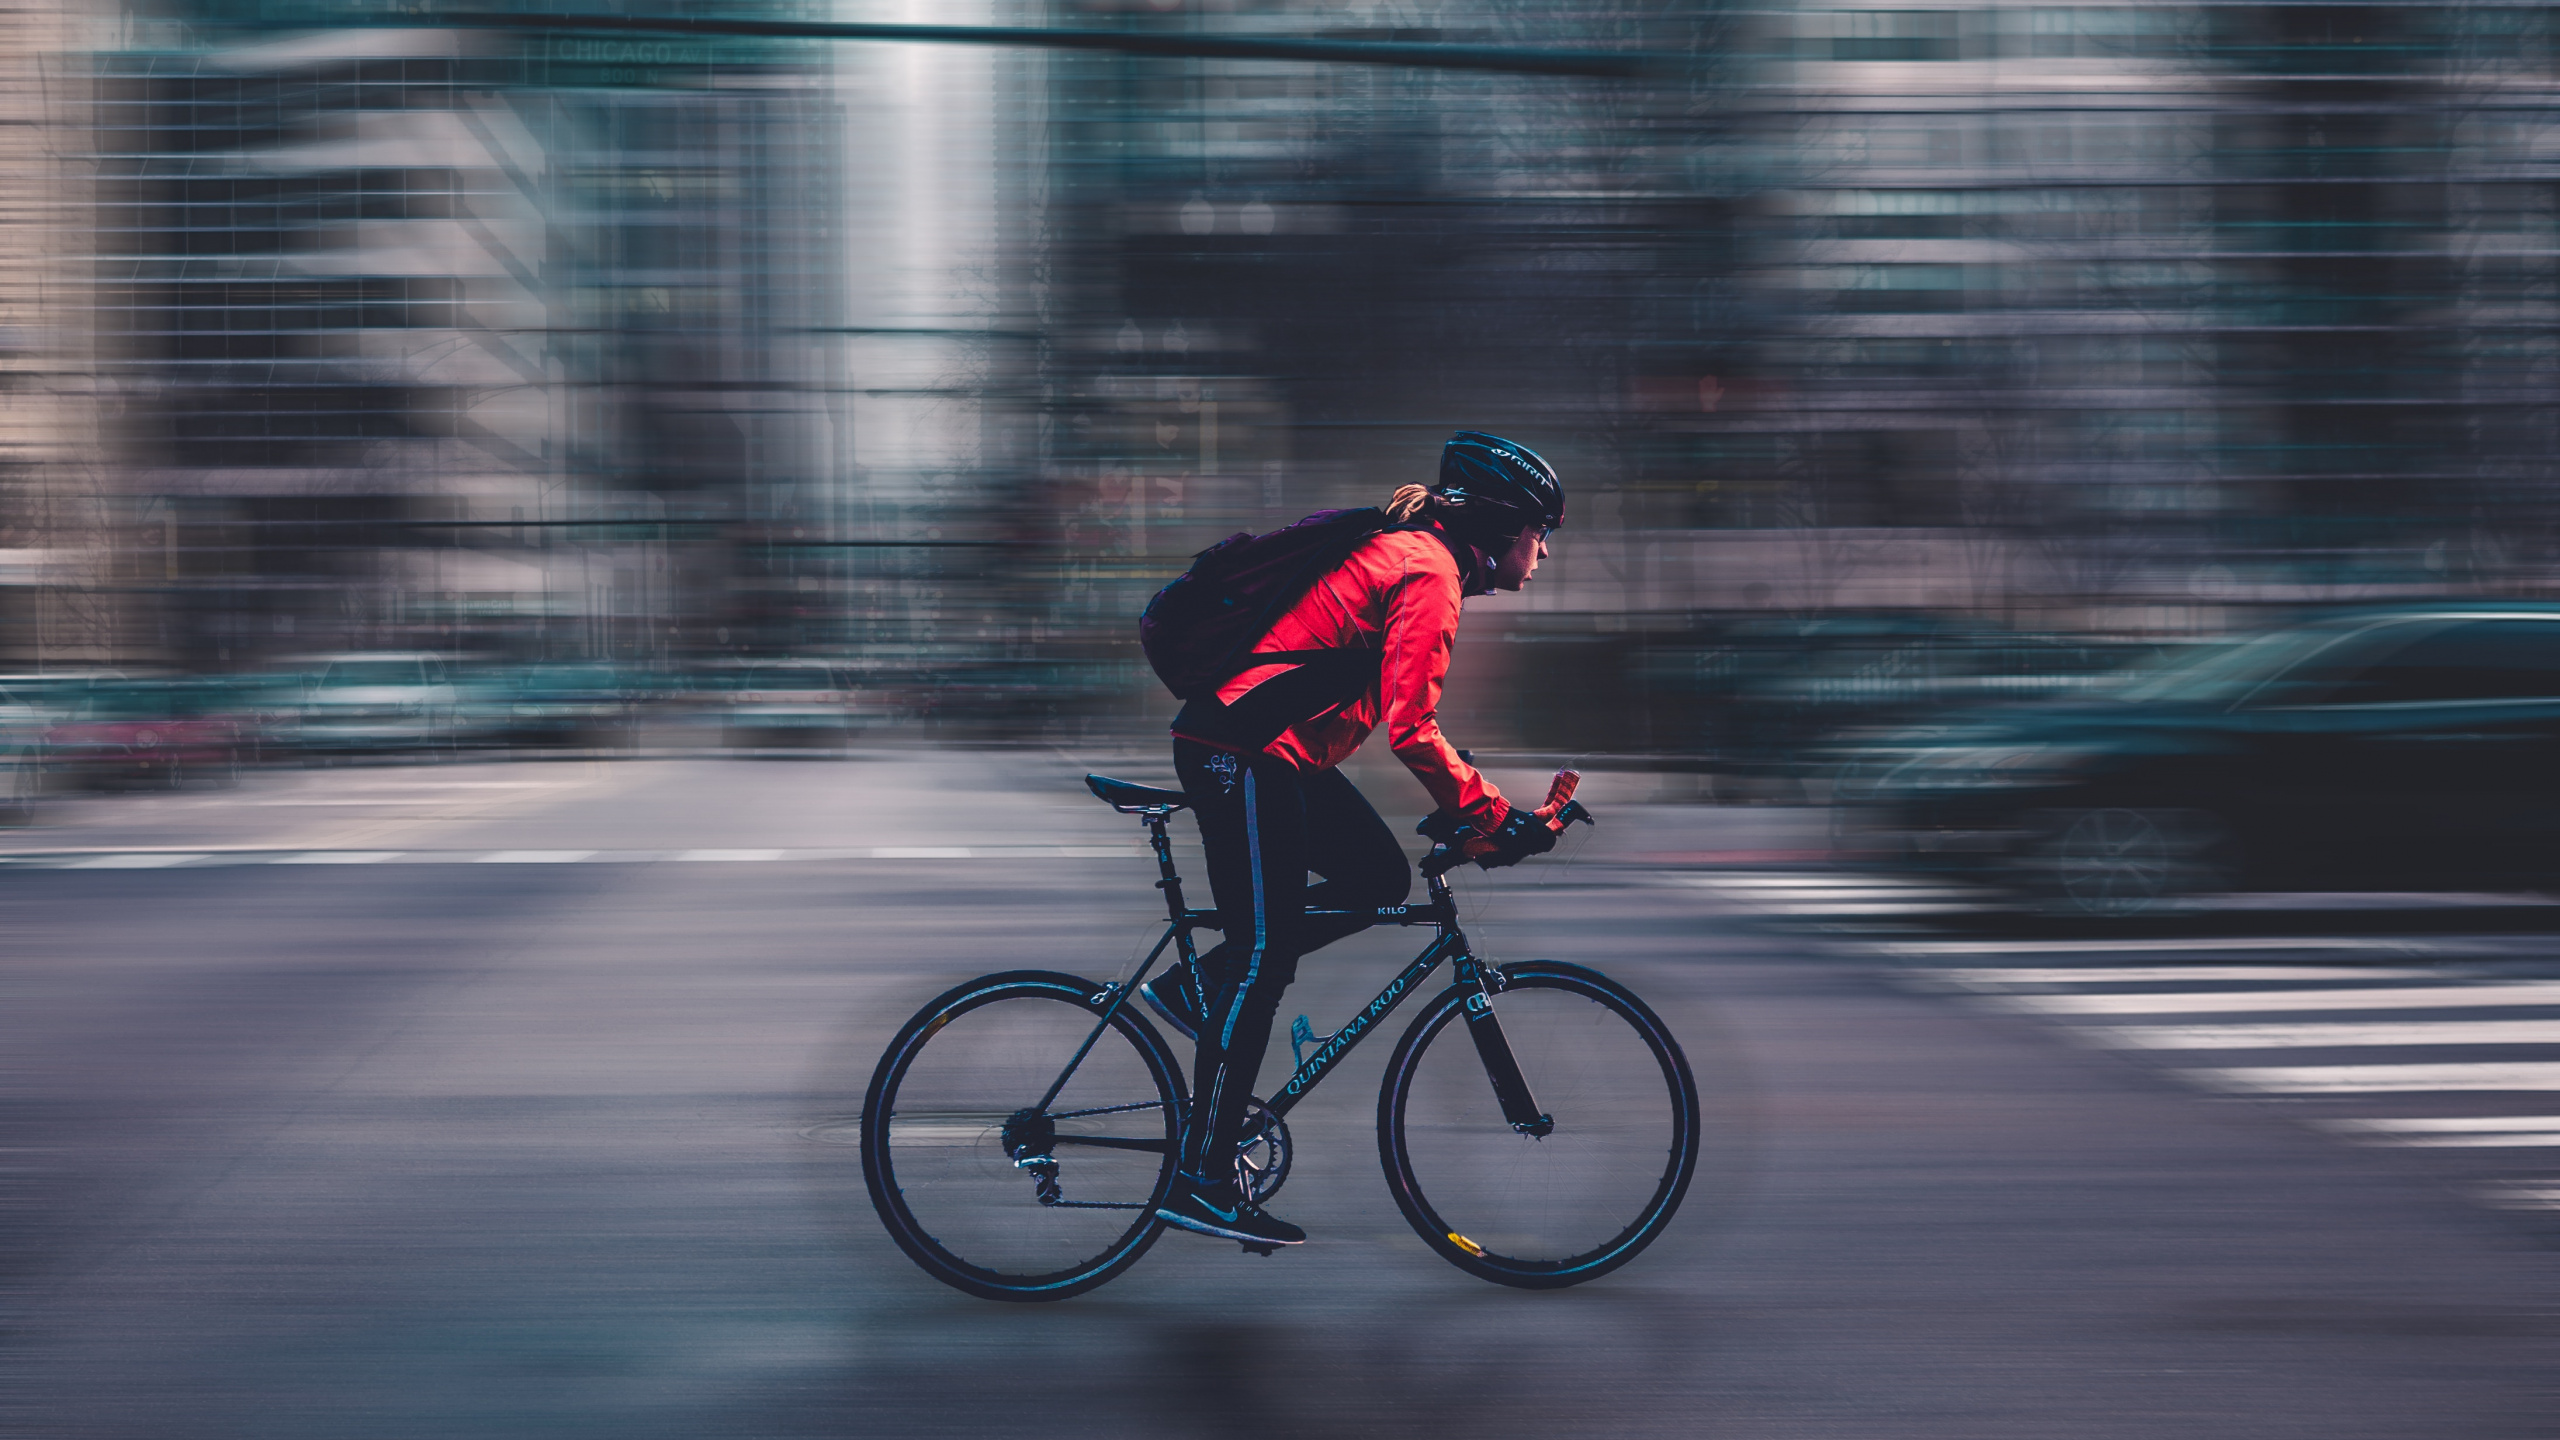 Hombre de Chaqueta Roja Montando Bicicleta en la Carretera Durante el Día. Wallpaper in 2560x1440 Resolution